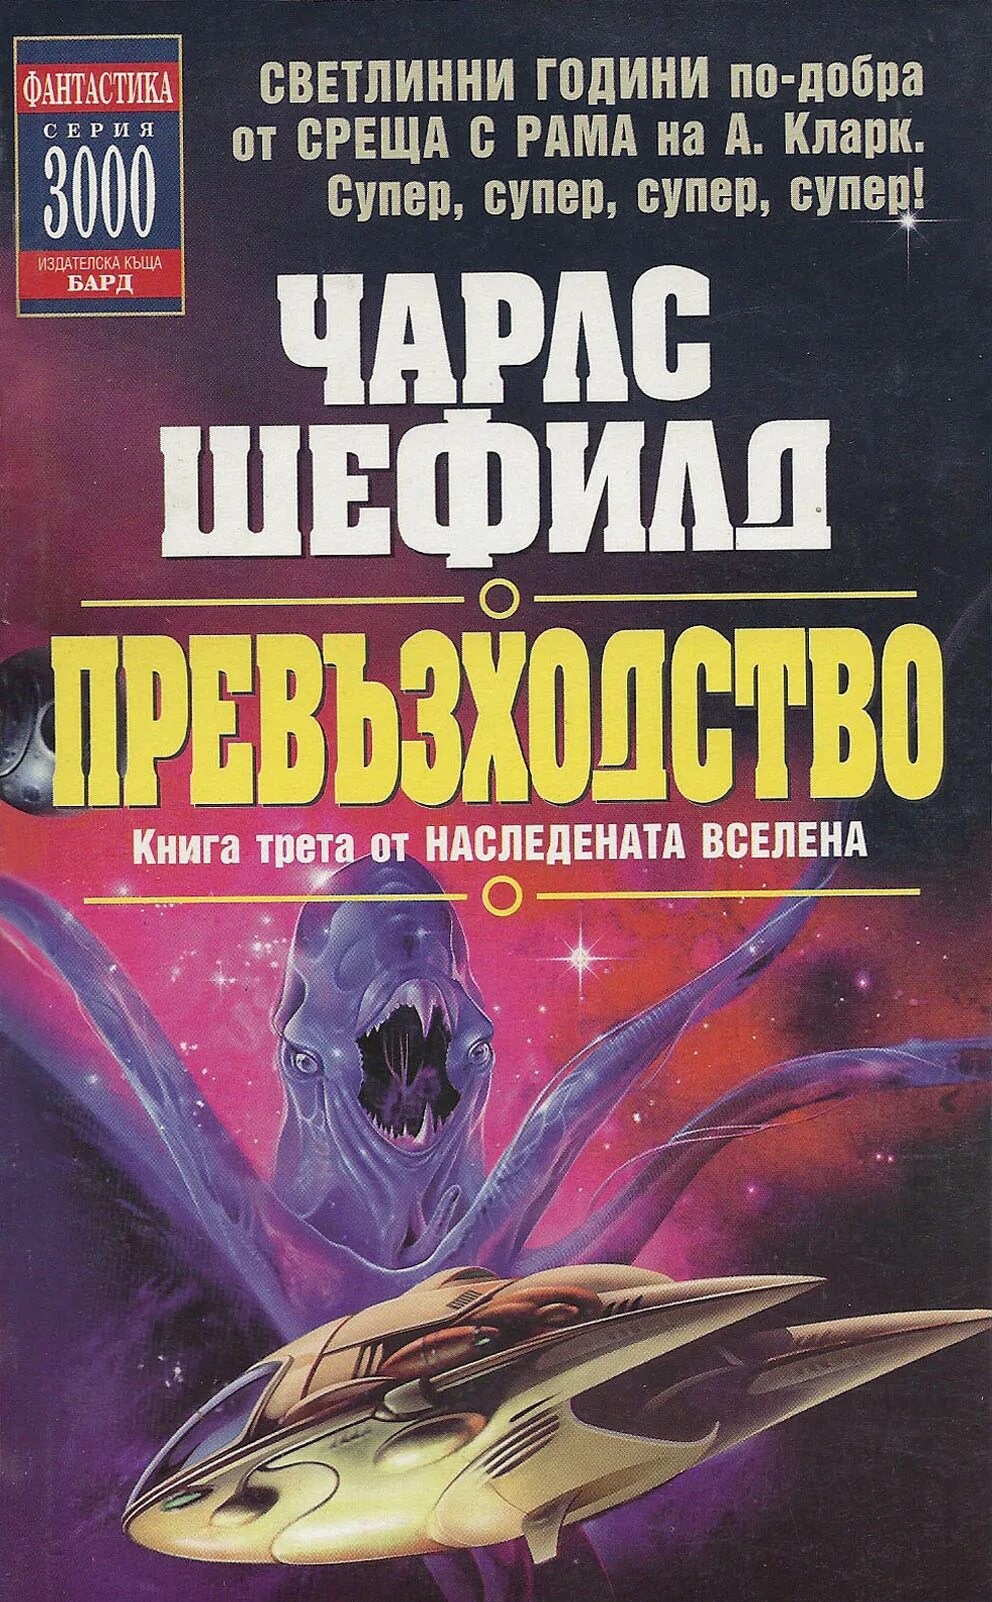 Читать книги формат fb2. Космическая фантастика книги. Книги жанра фантастика. Книга жанра фантастика космос.